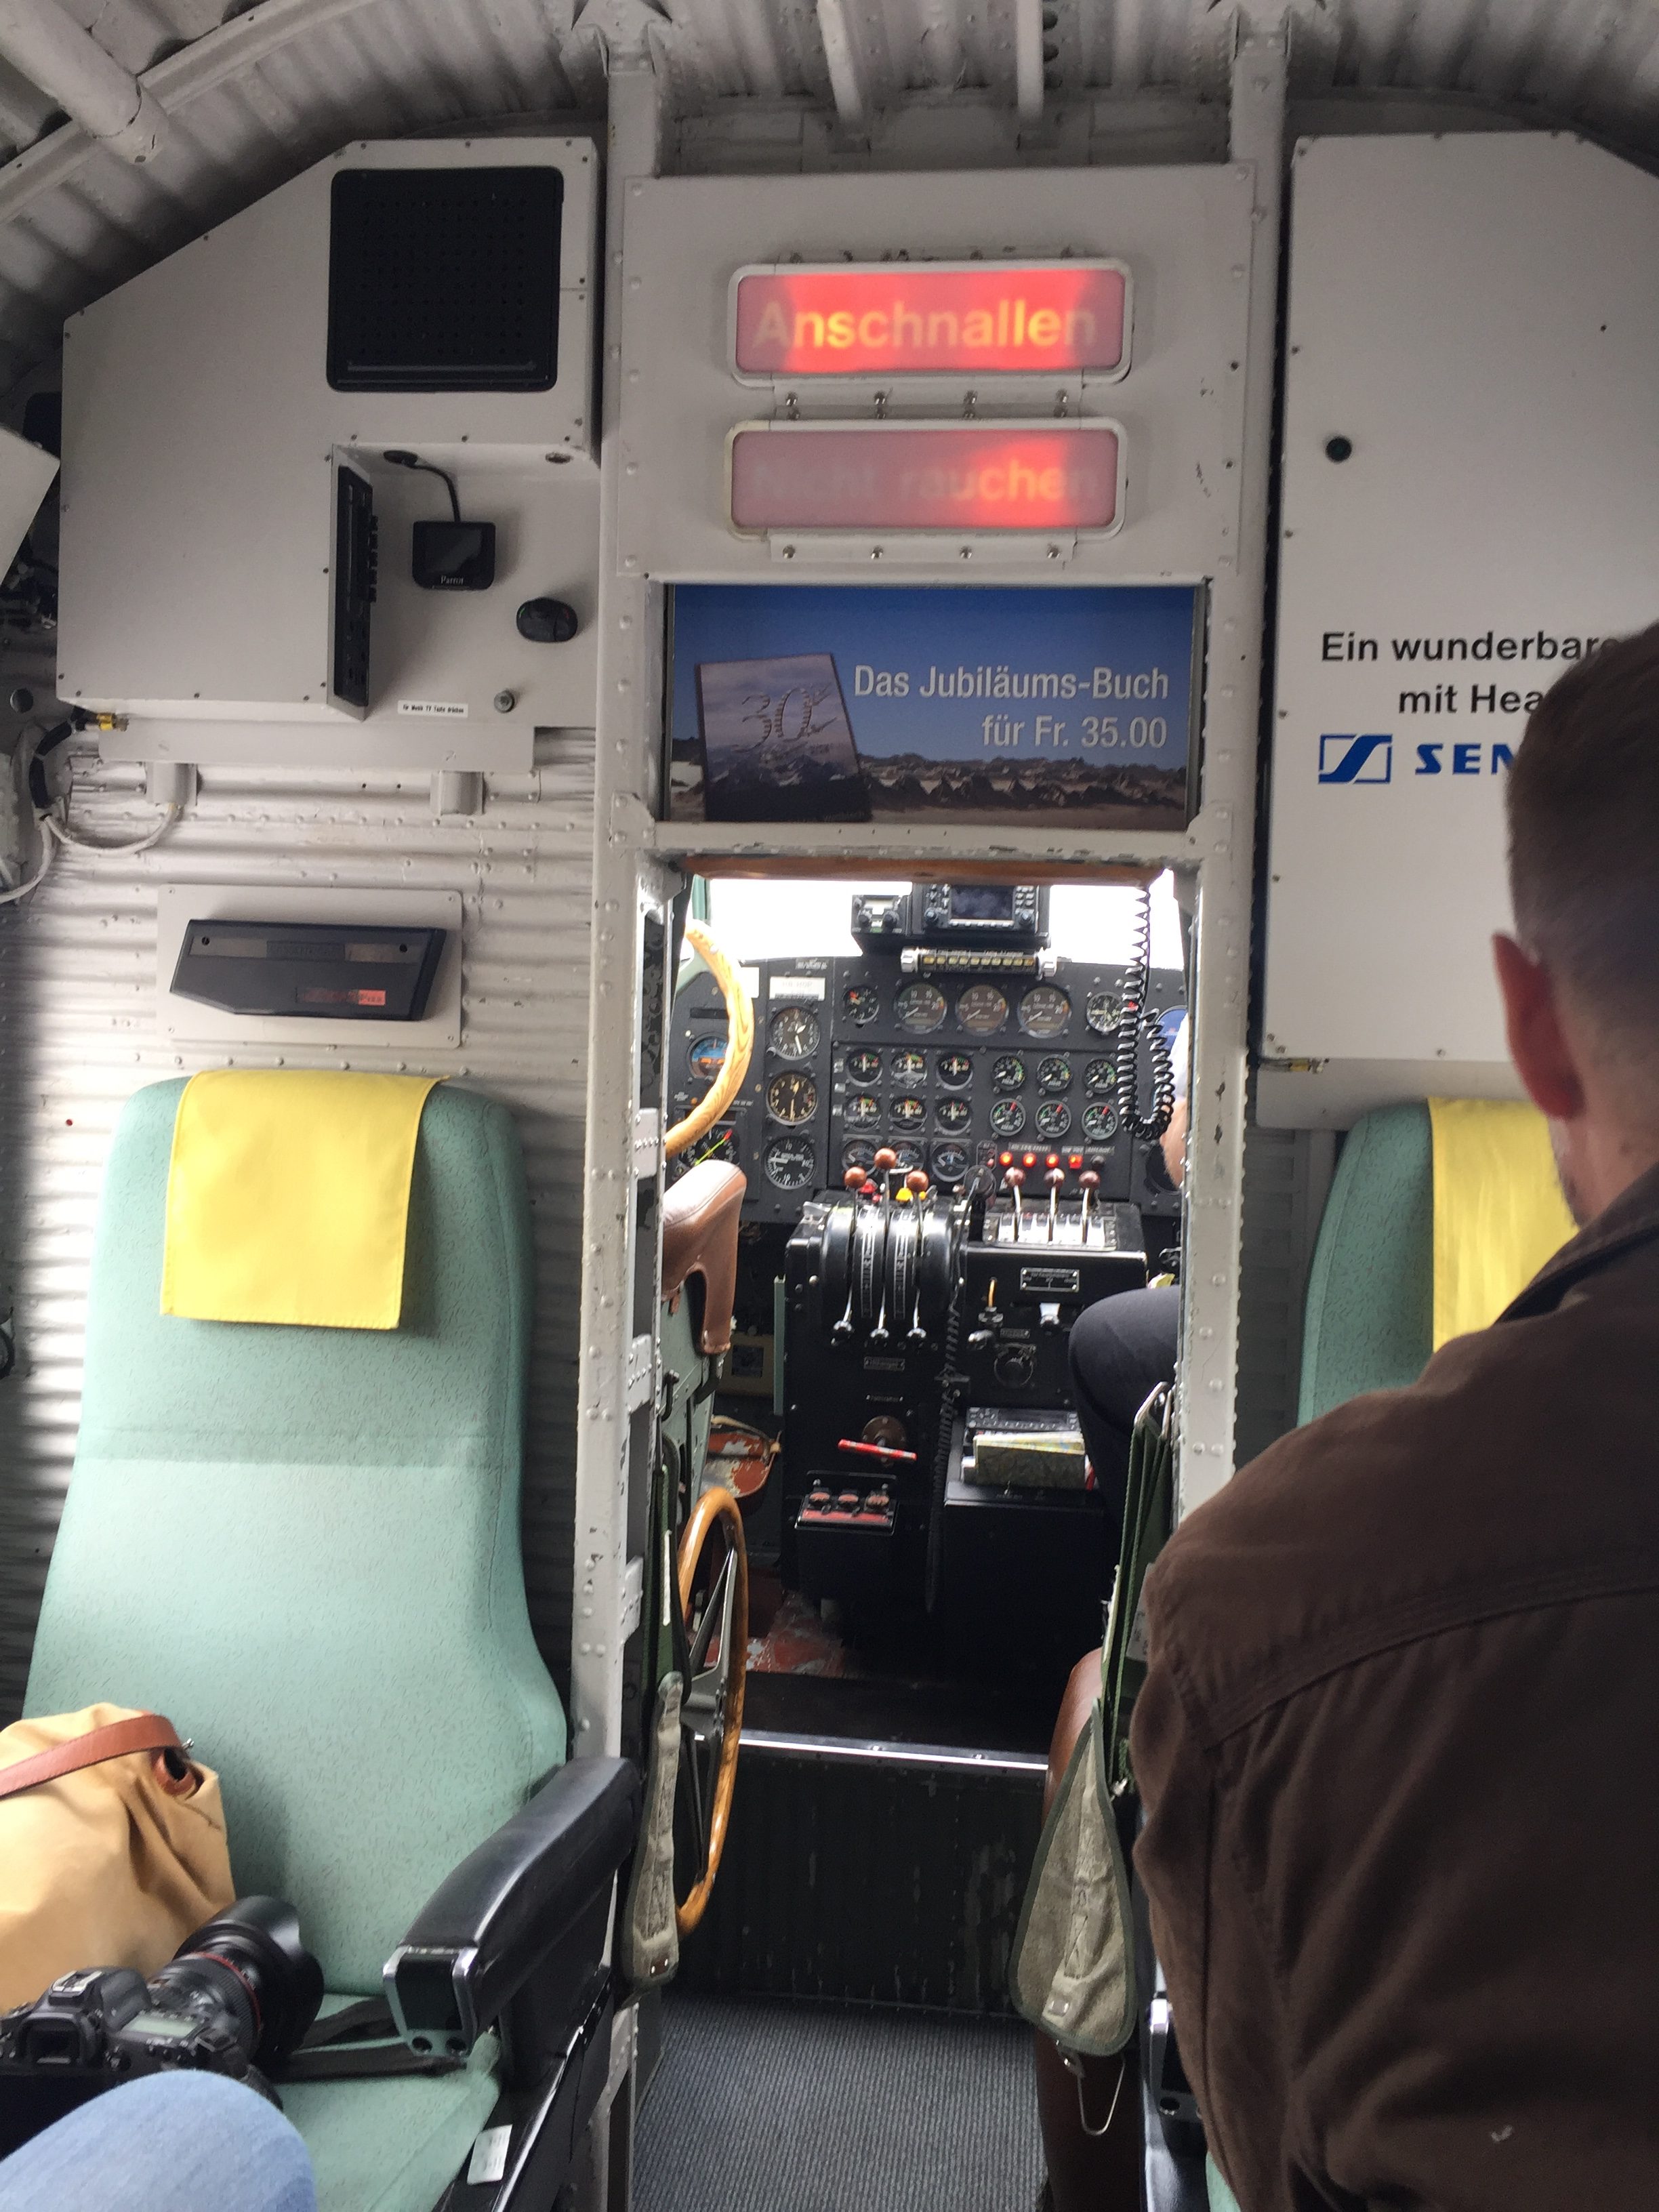 20160917_cockpit